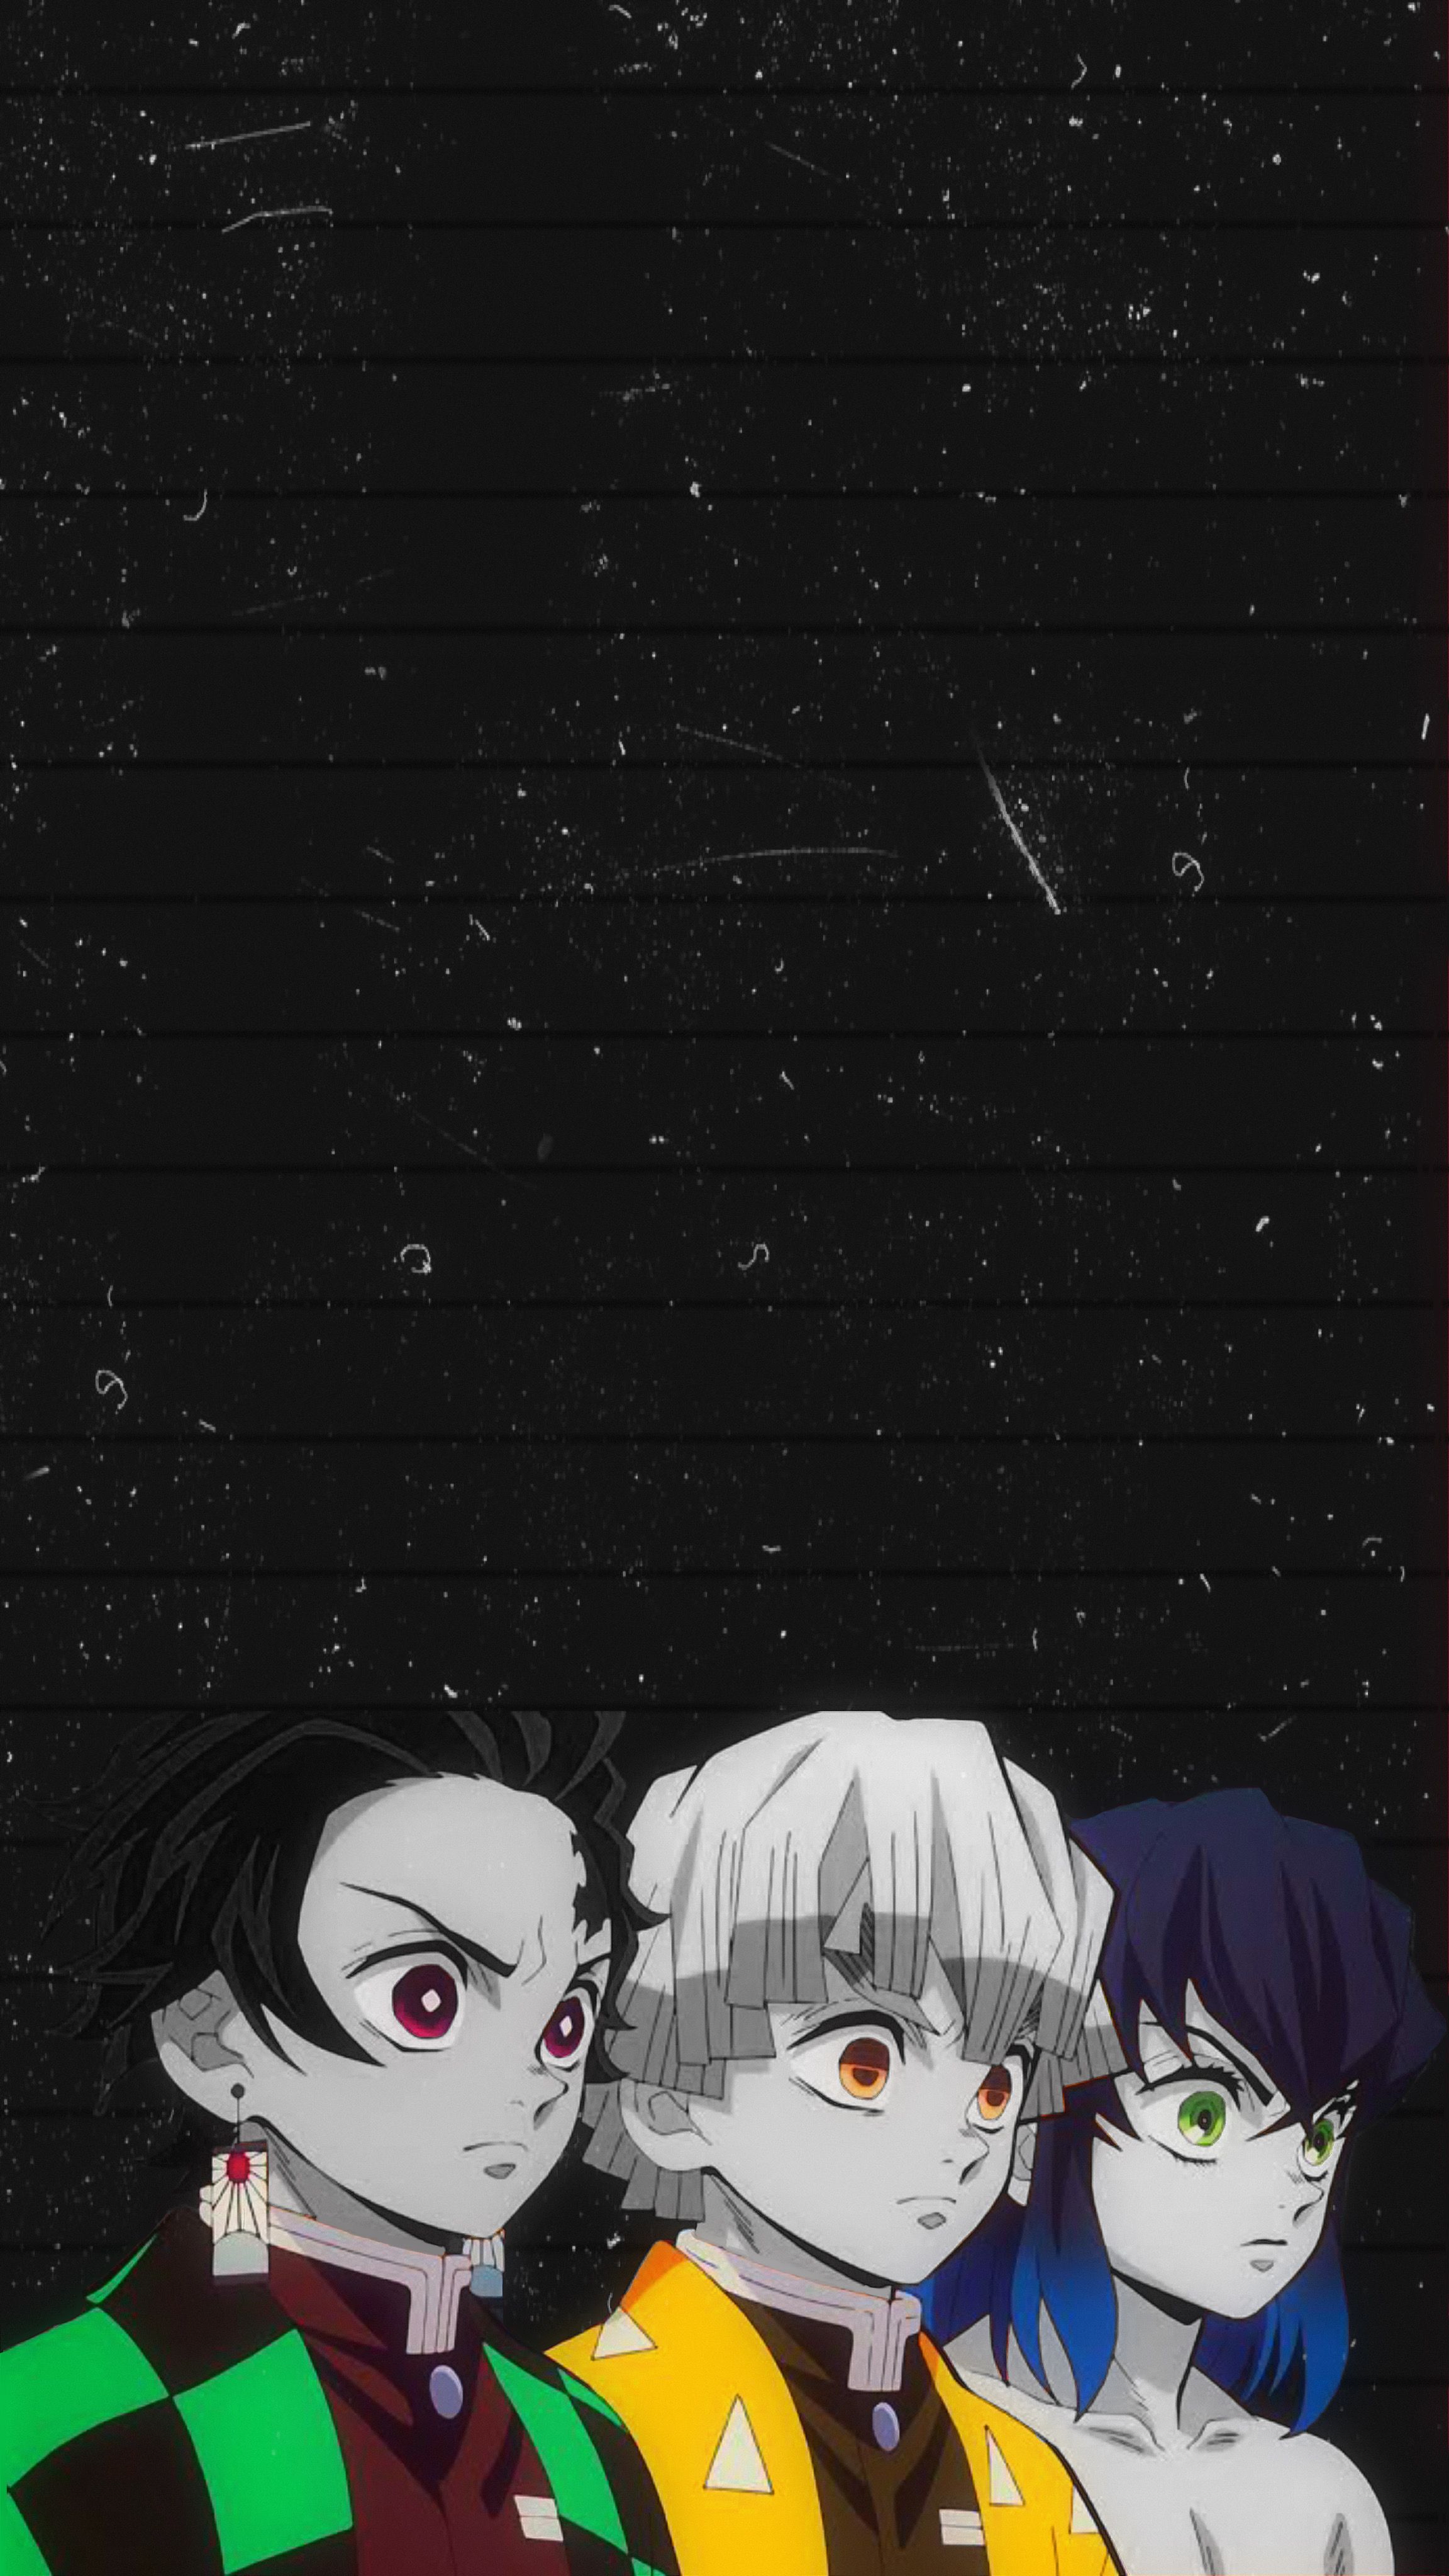 Mobile wallpaper Anime Demon Slayer Kimetsu No Yaiba Zenitsu Agatsuma  Inosuke Hashibira Tanjiro Kamado 1054725 download the picture for free